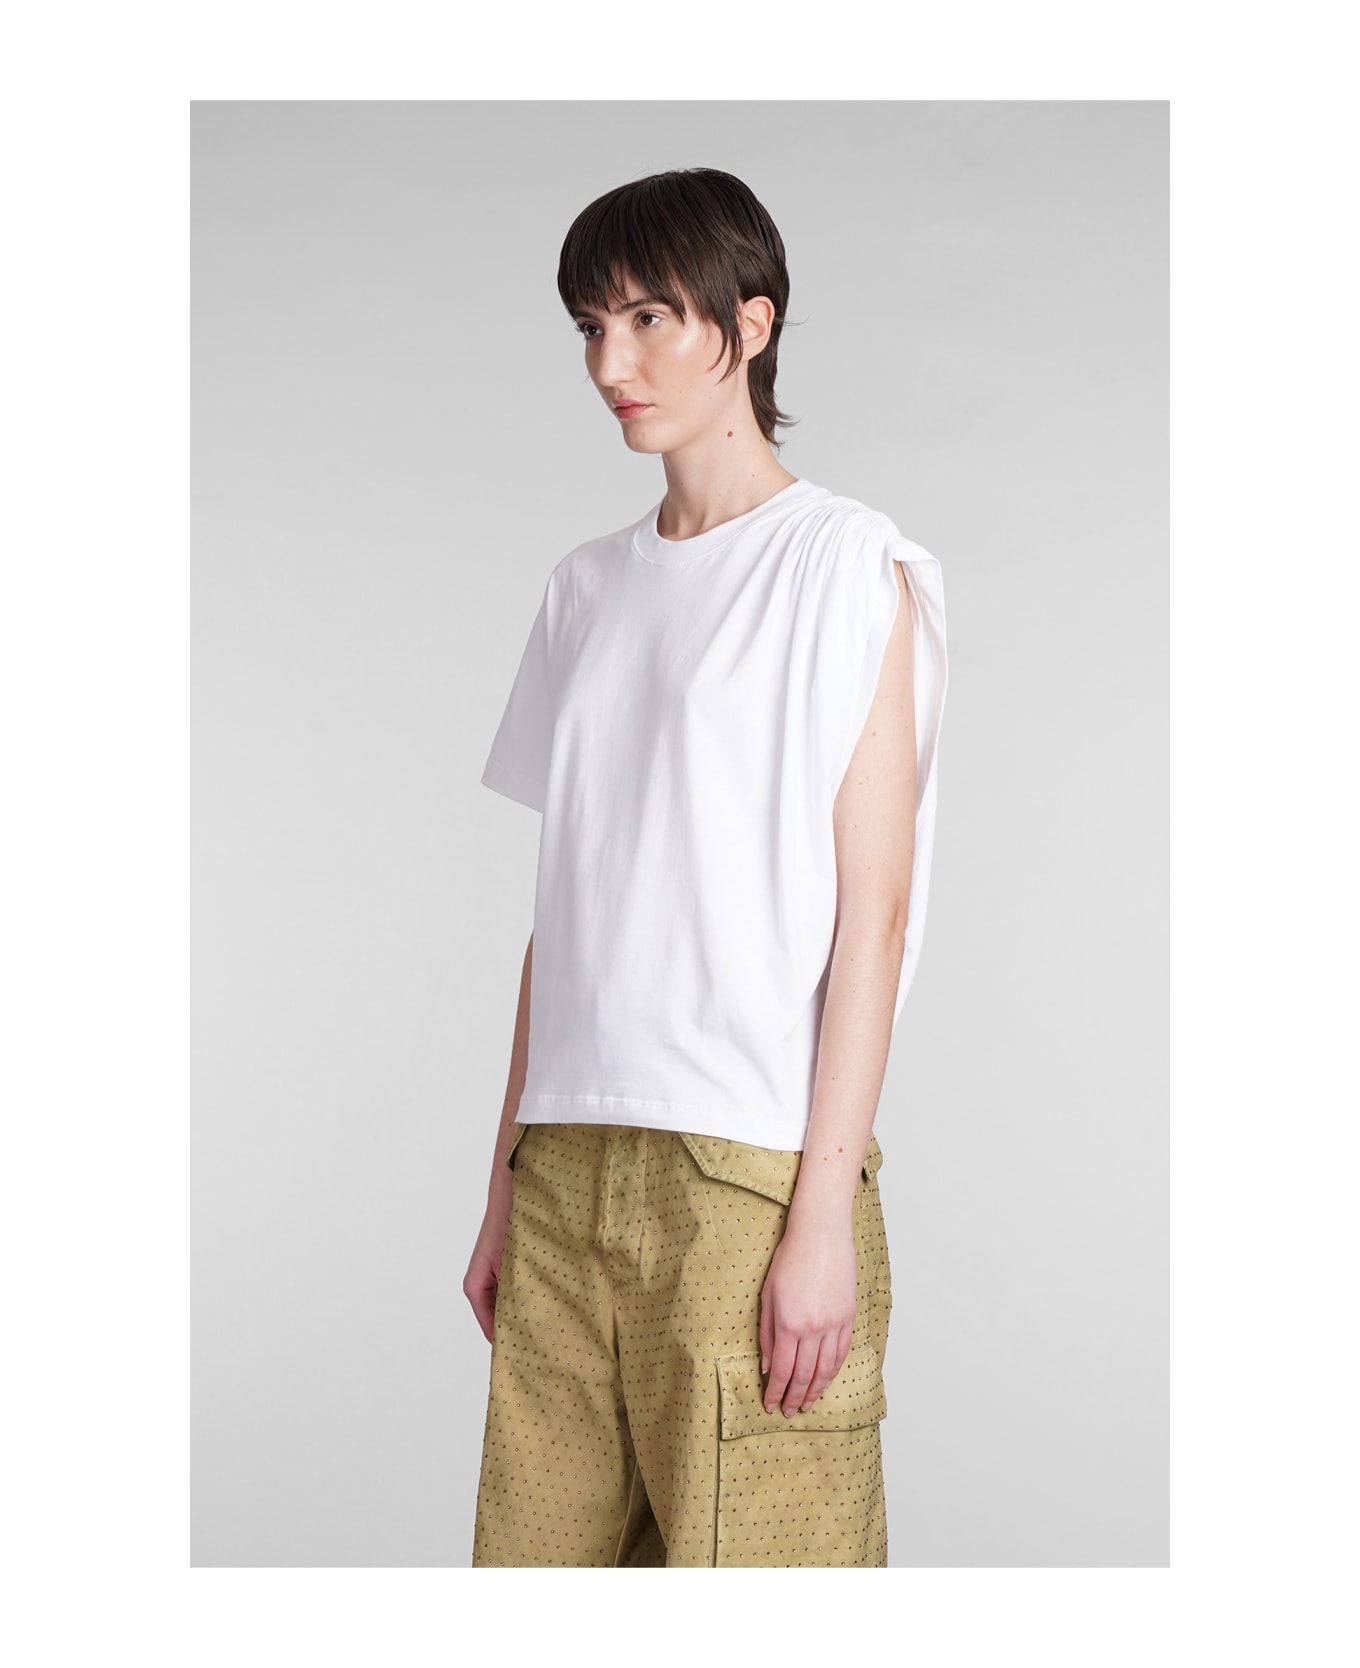 Laneus T-shirt In White Cotton - white